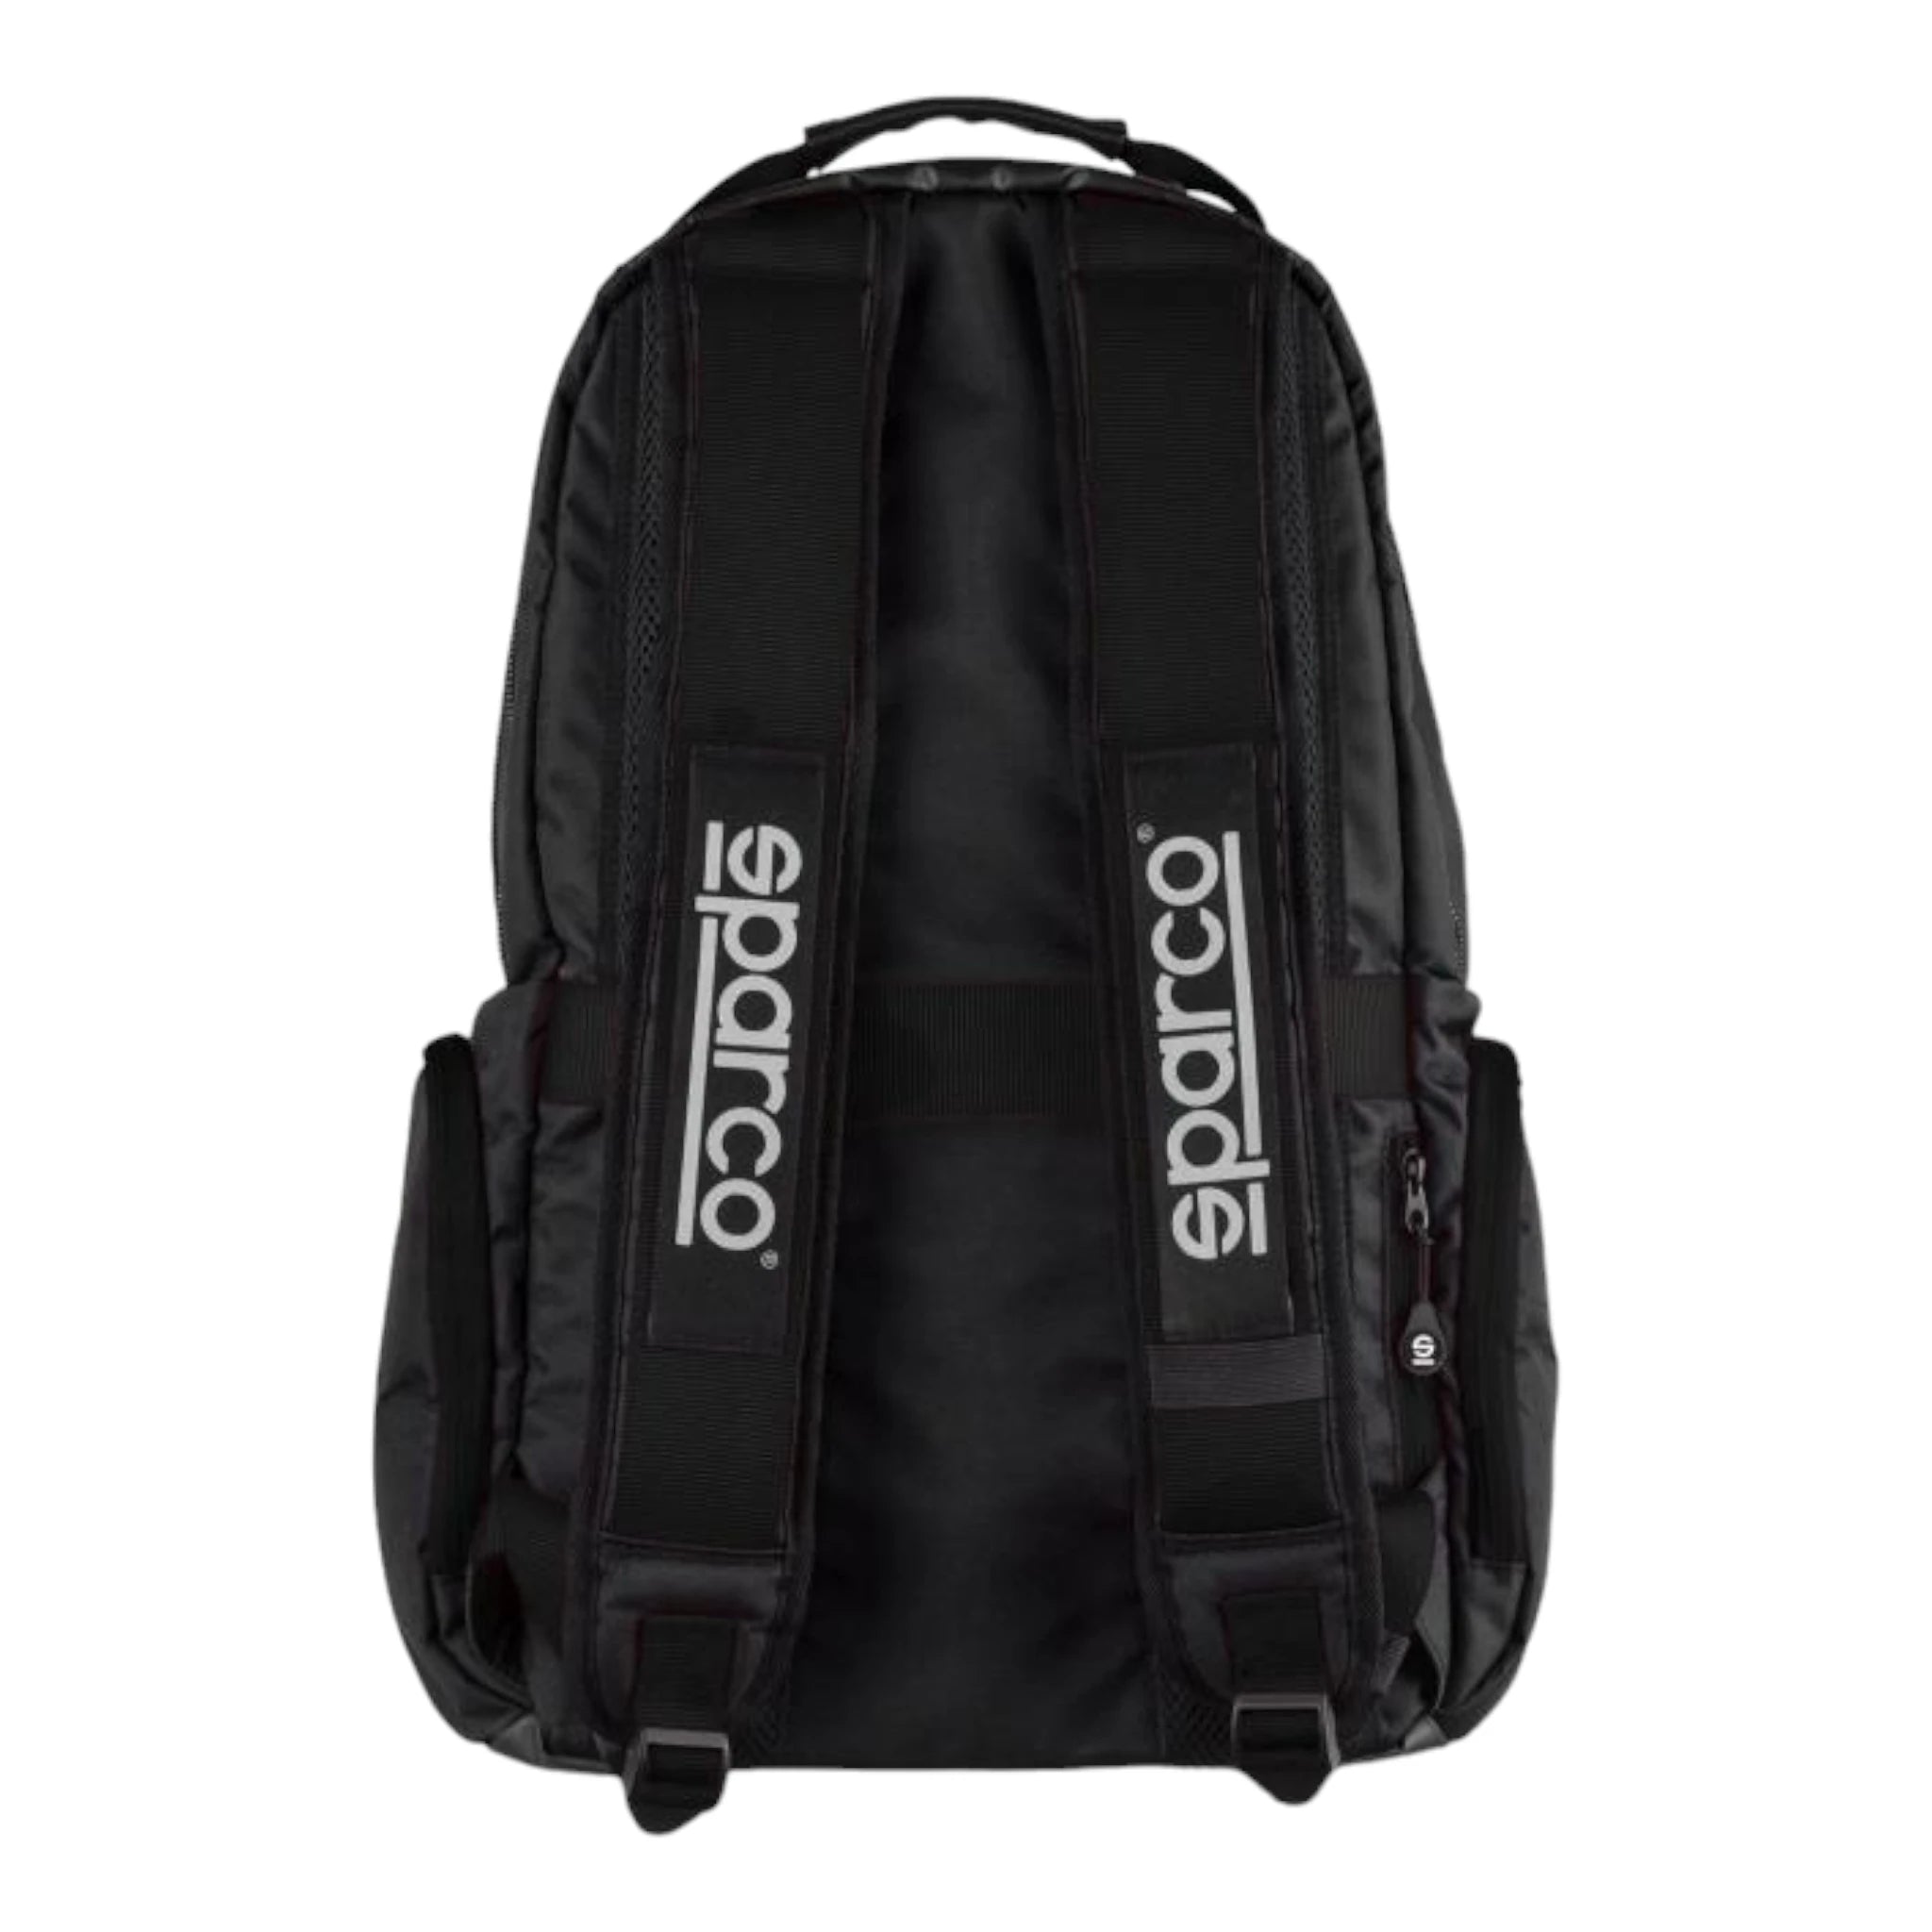 Sparco Superstage Backpack Targa Florio Original Black